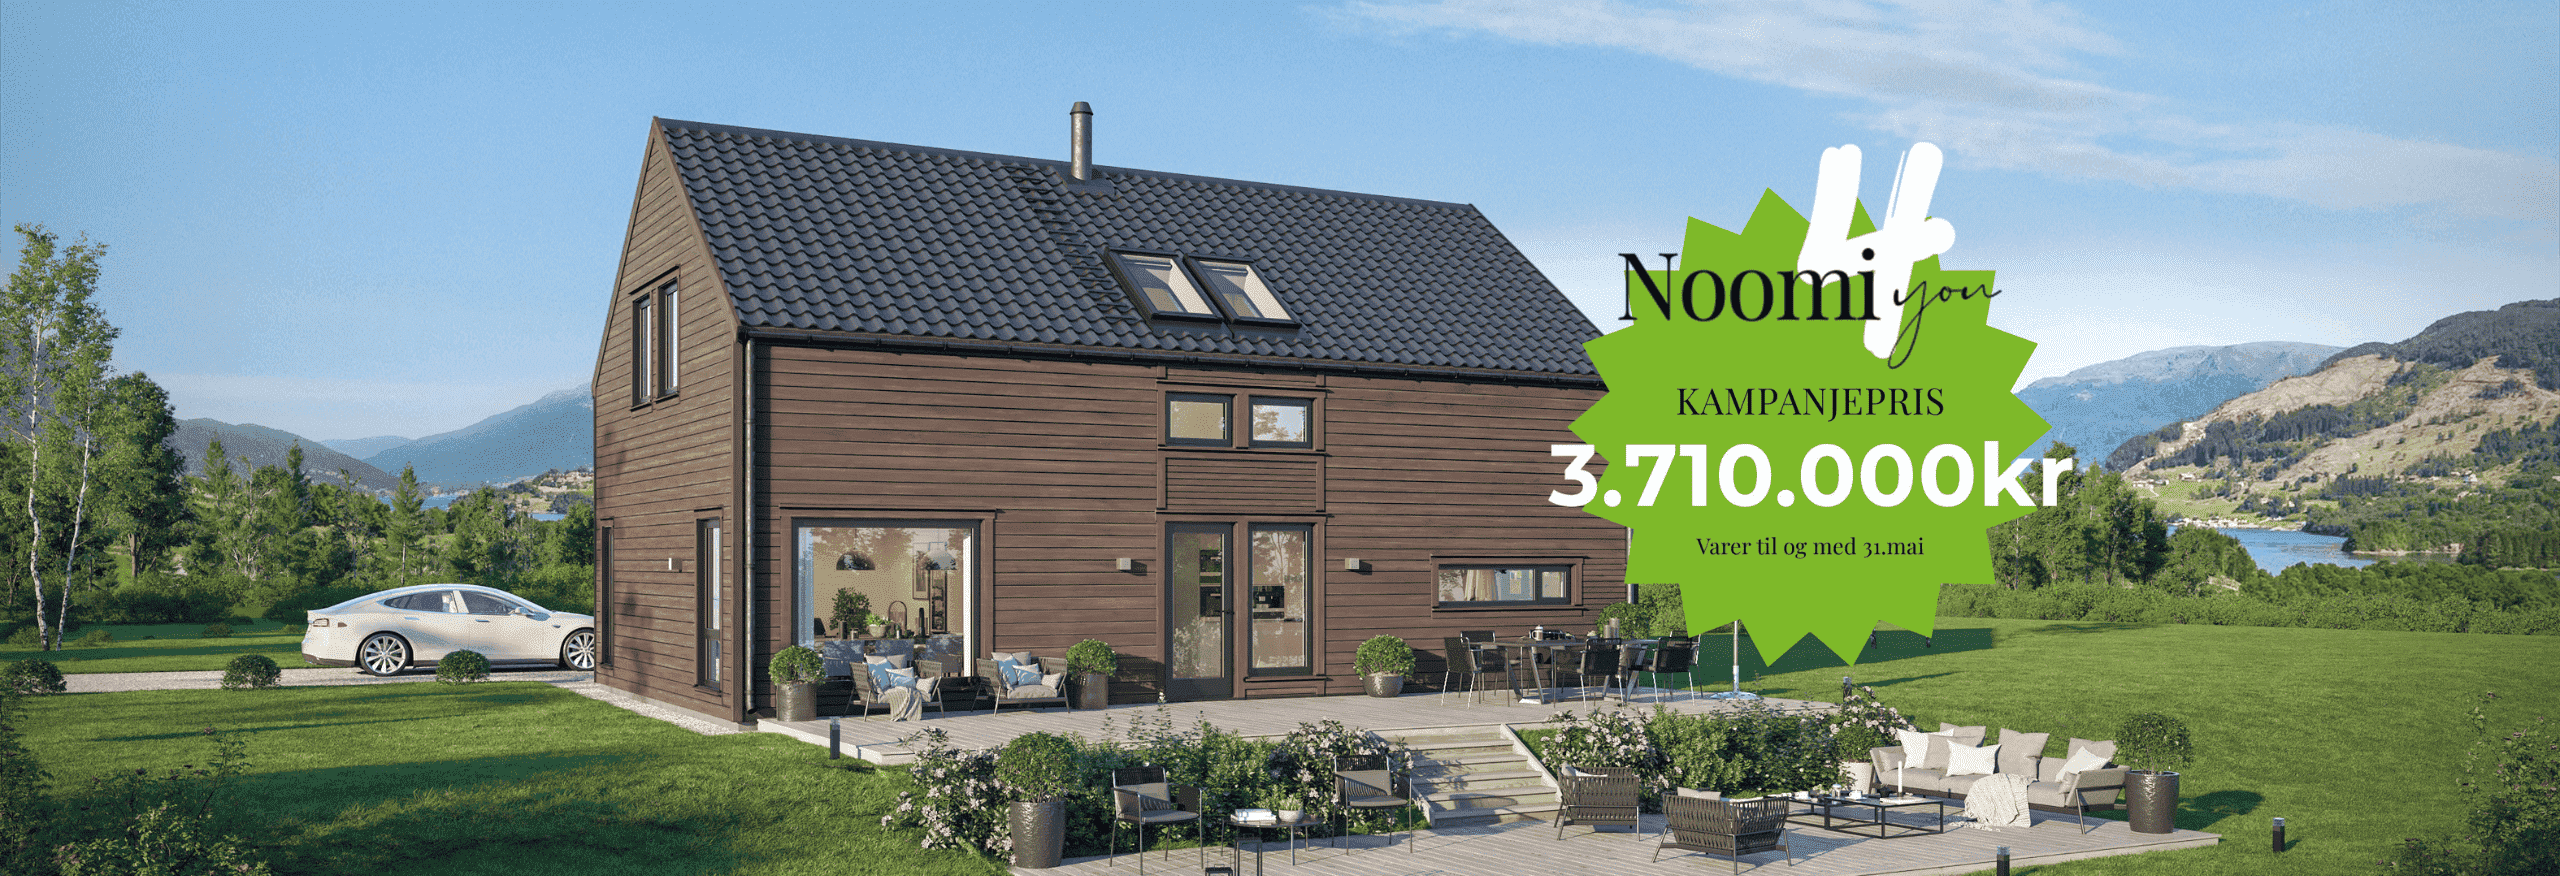 Hus med bra tilbud! Vår populære husmodell Noomi kan du nå få til kampanjepris 3.710.000kr frem til 31.mai 2024